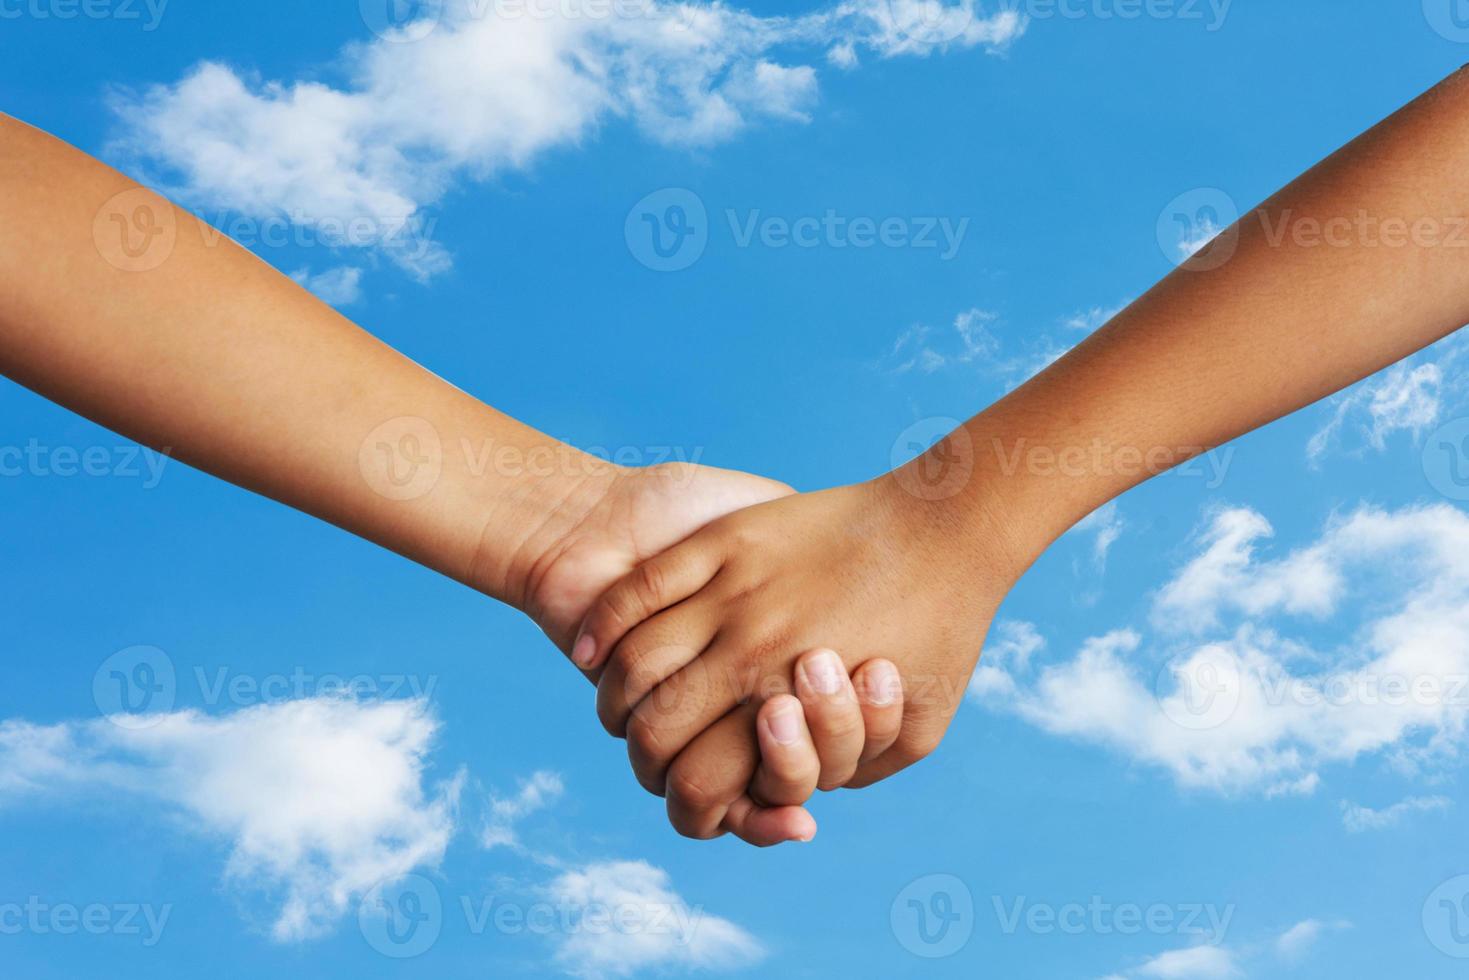 pareja cogidos de la mano fondo del cielo foto